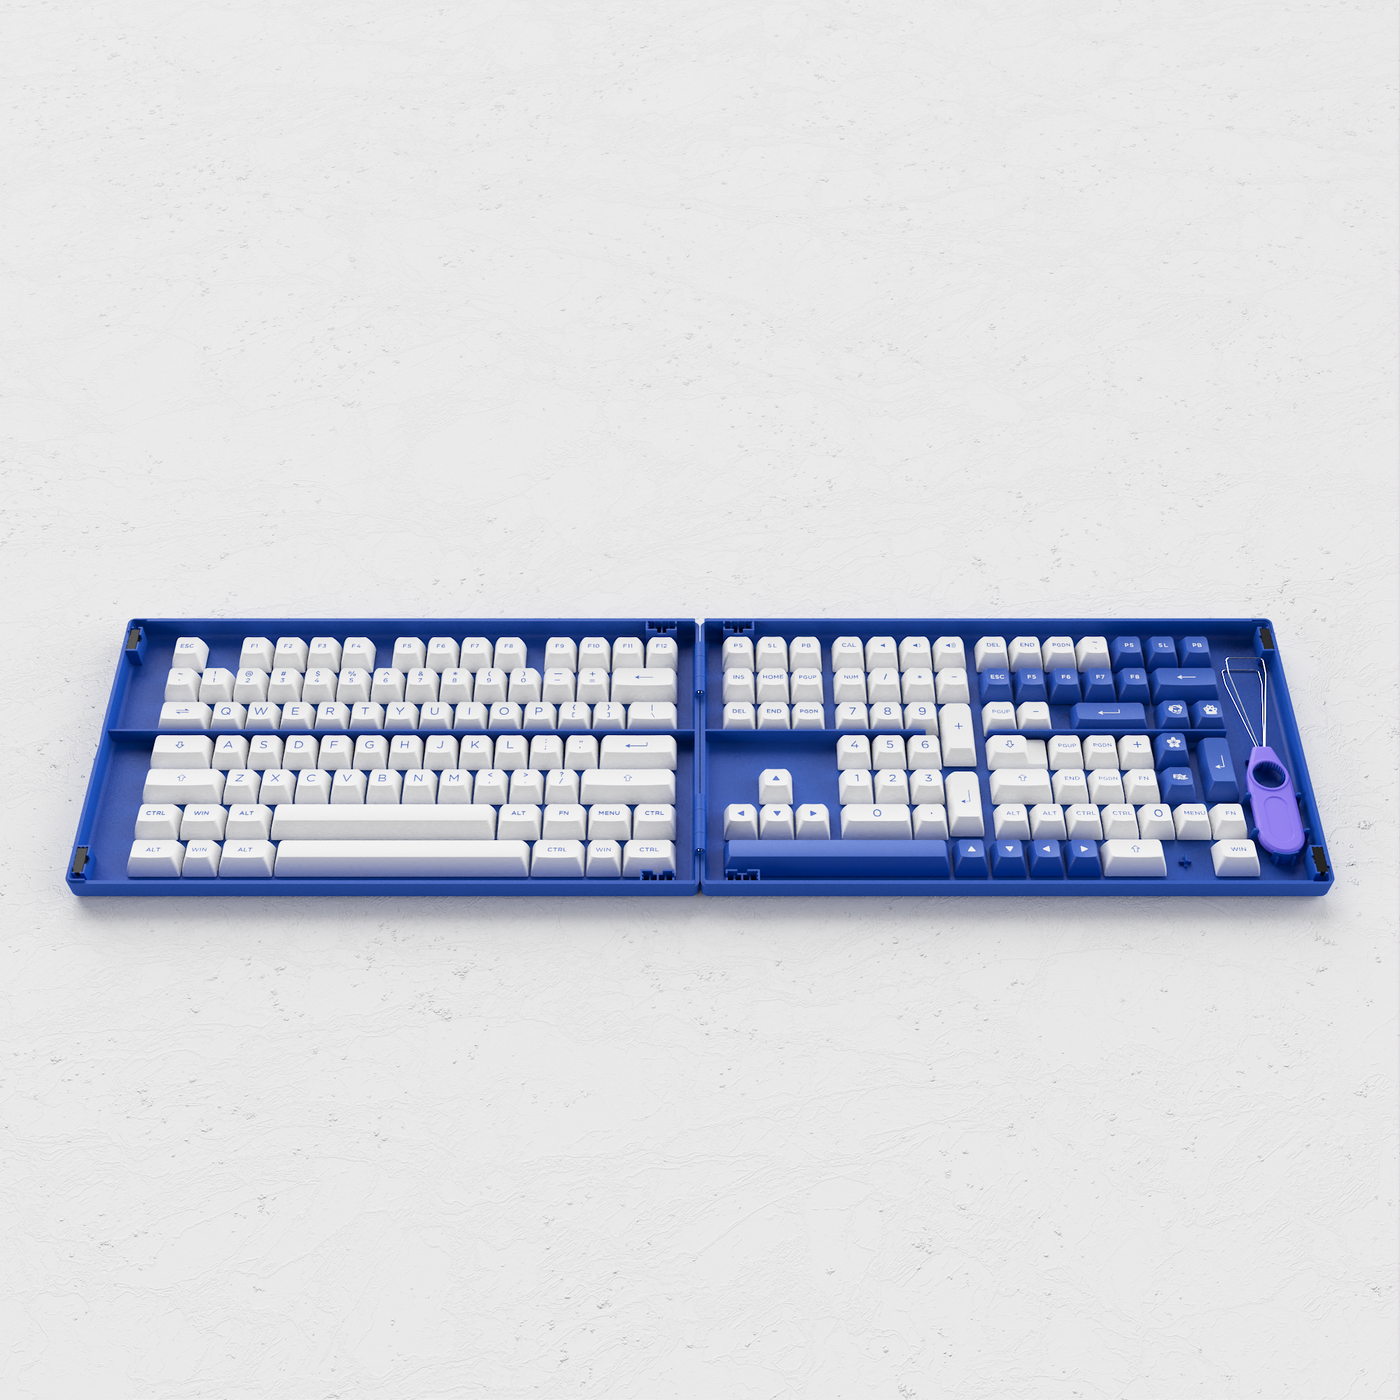 Blue on White Tastaturkappen-Set (197-Key) - ISO